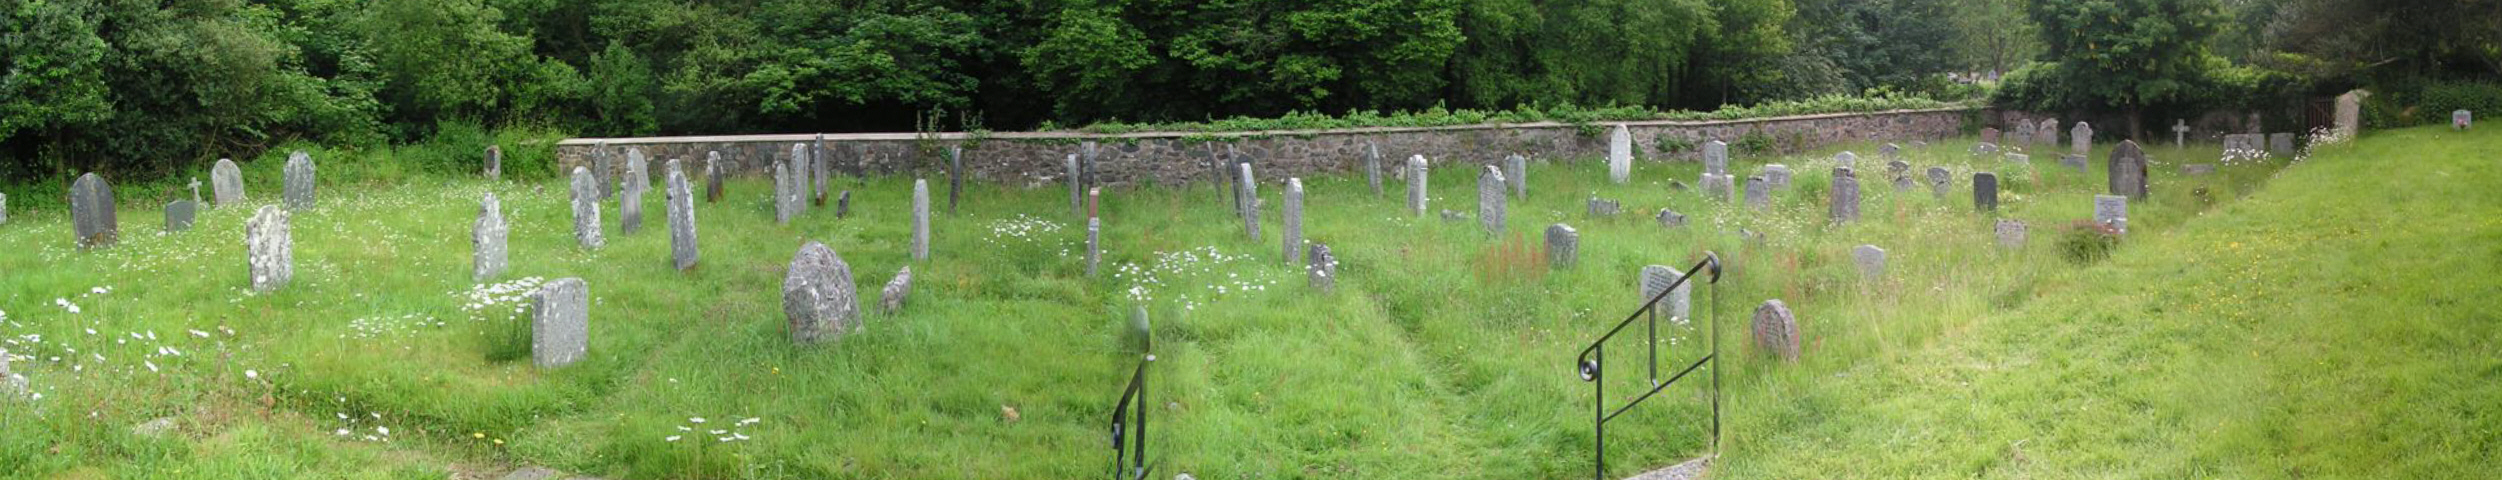 Quaker Burying Ground